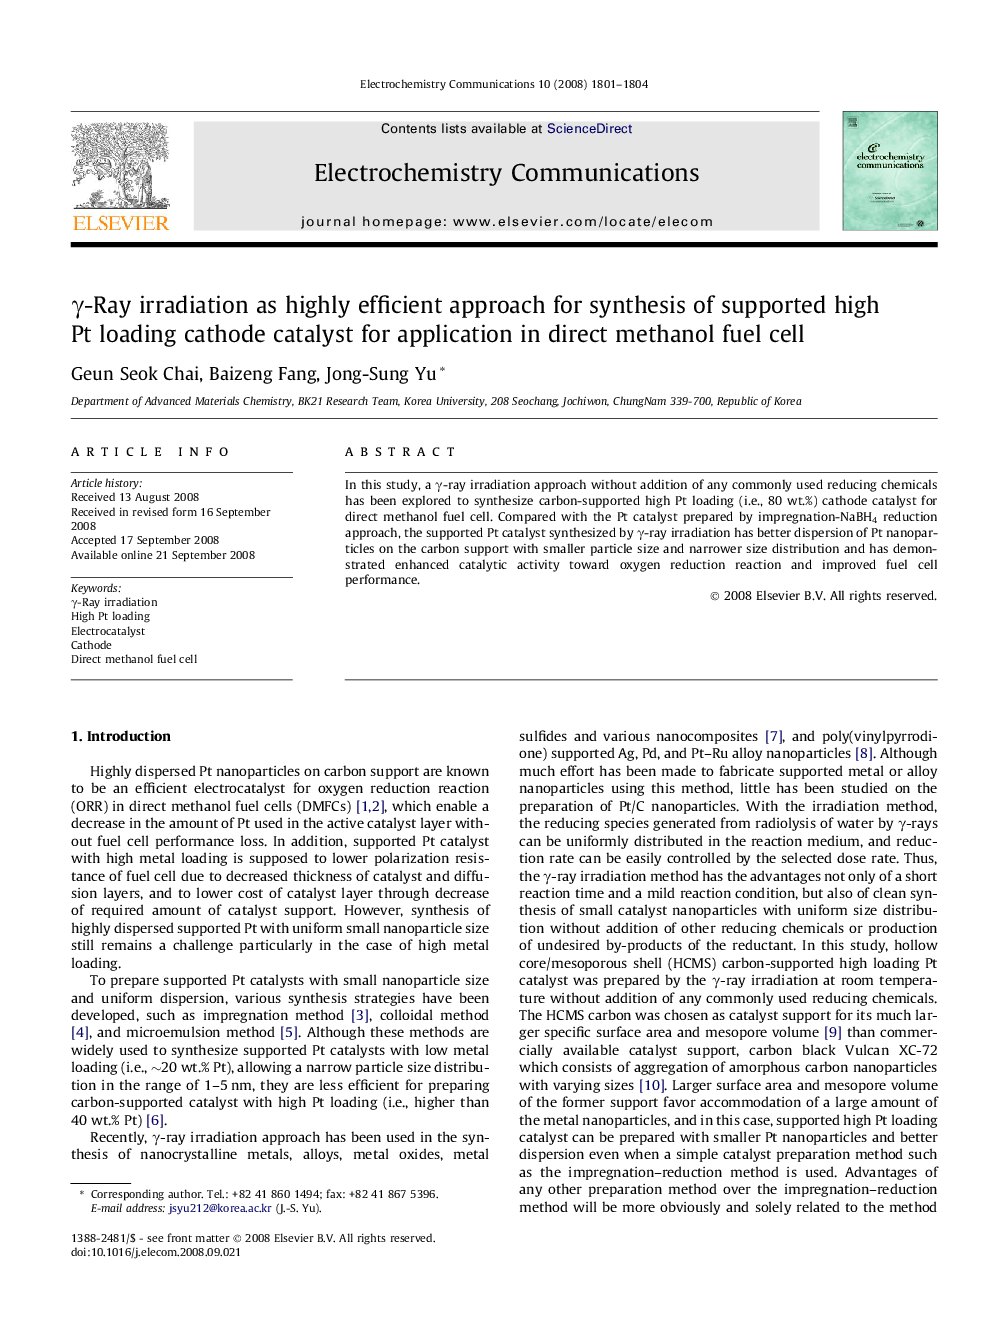 γ-Ray irradiation as highly efficient approach for synthesis of supported high Pt loading cathode catalyst for application in direct methanol fuel cell